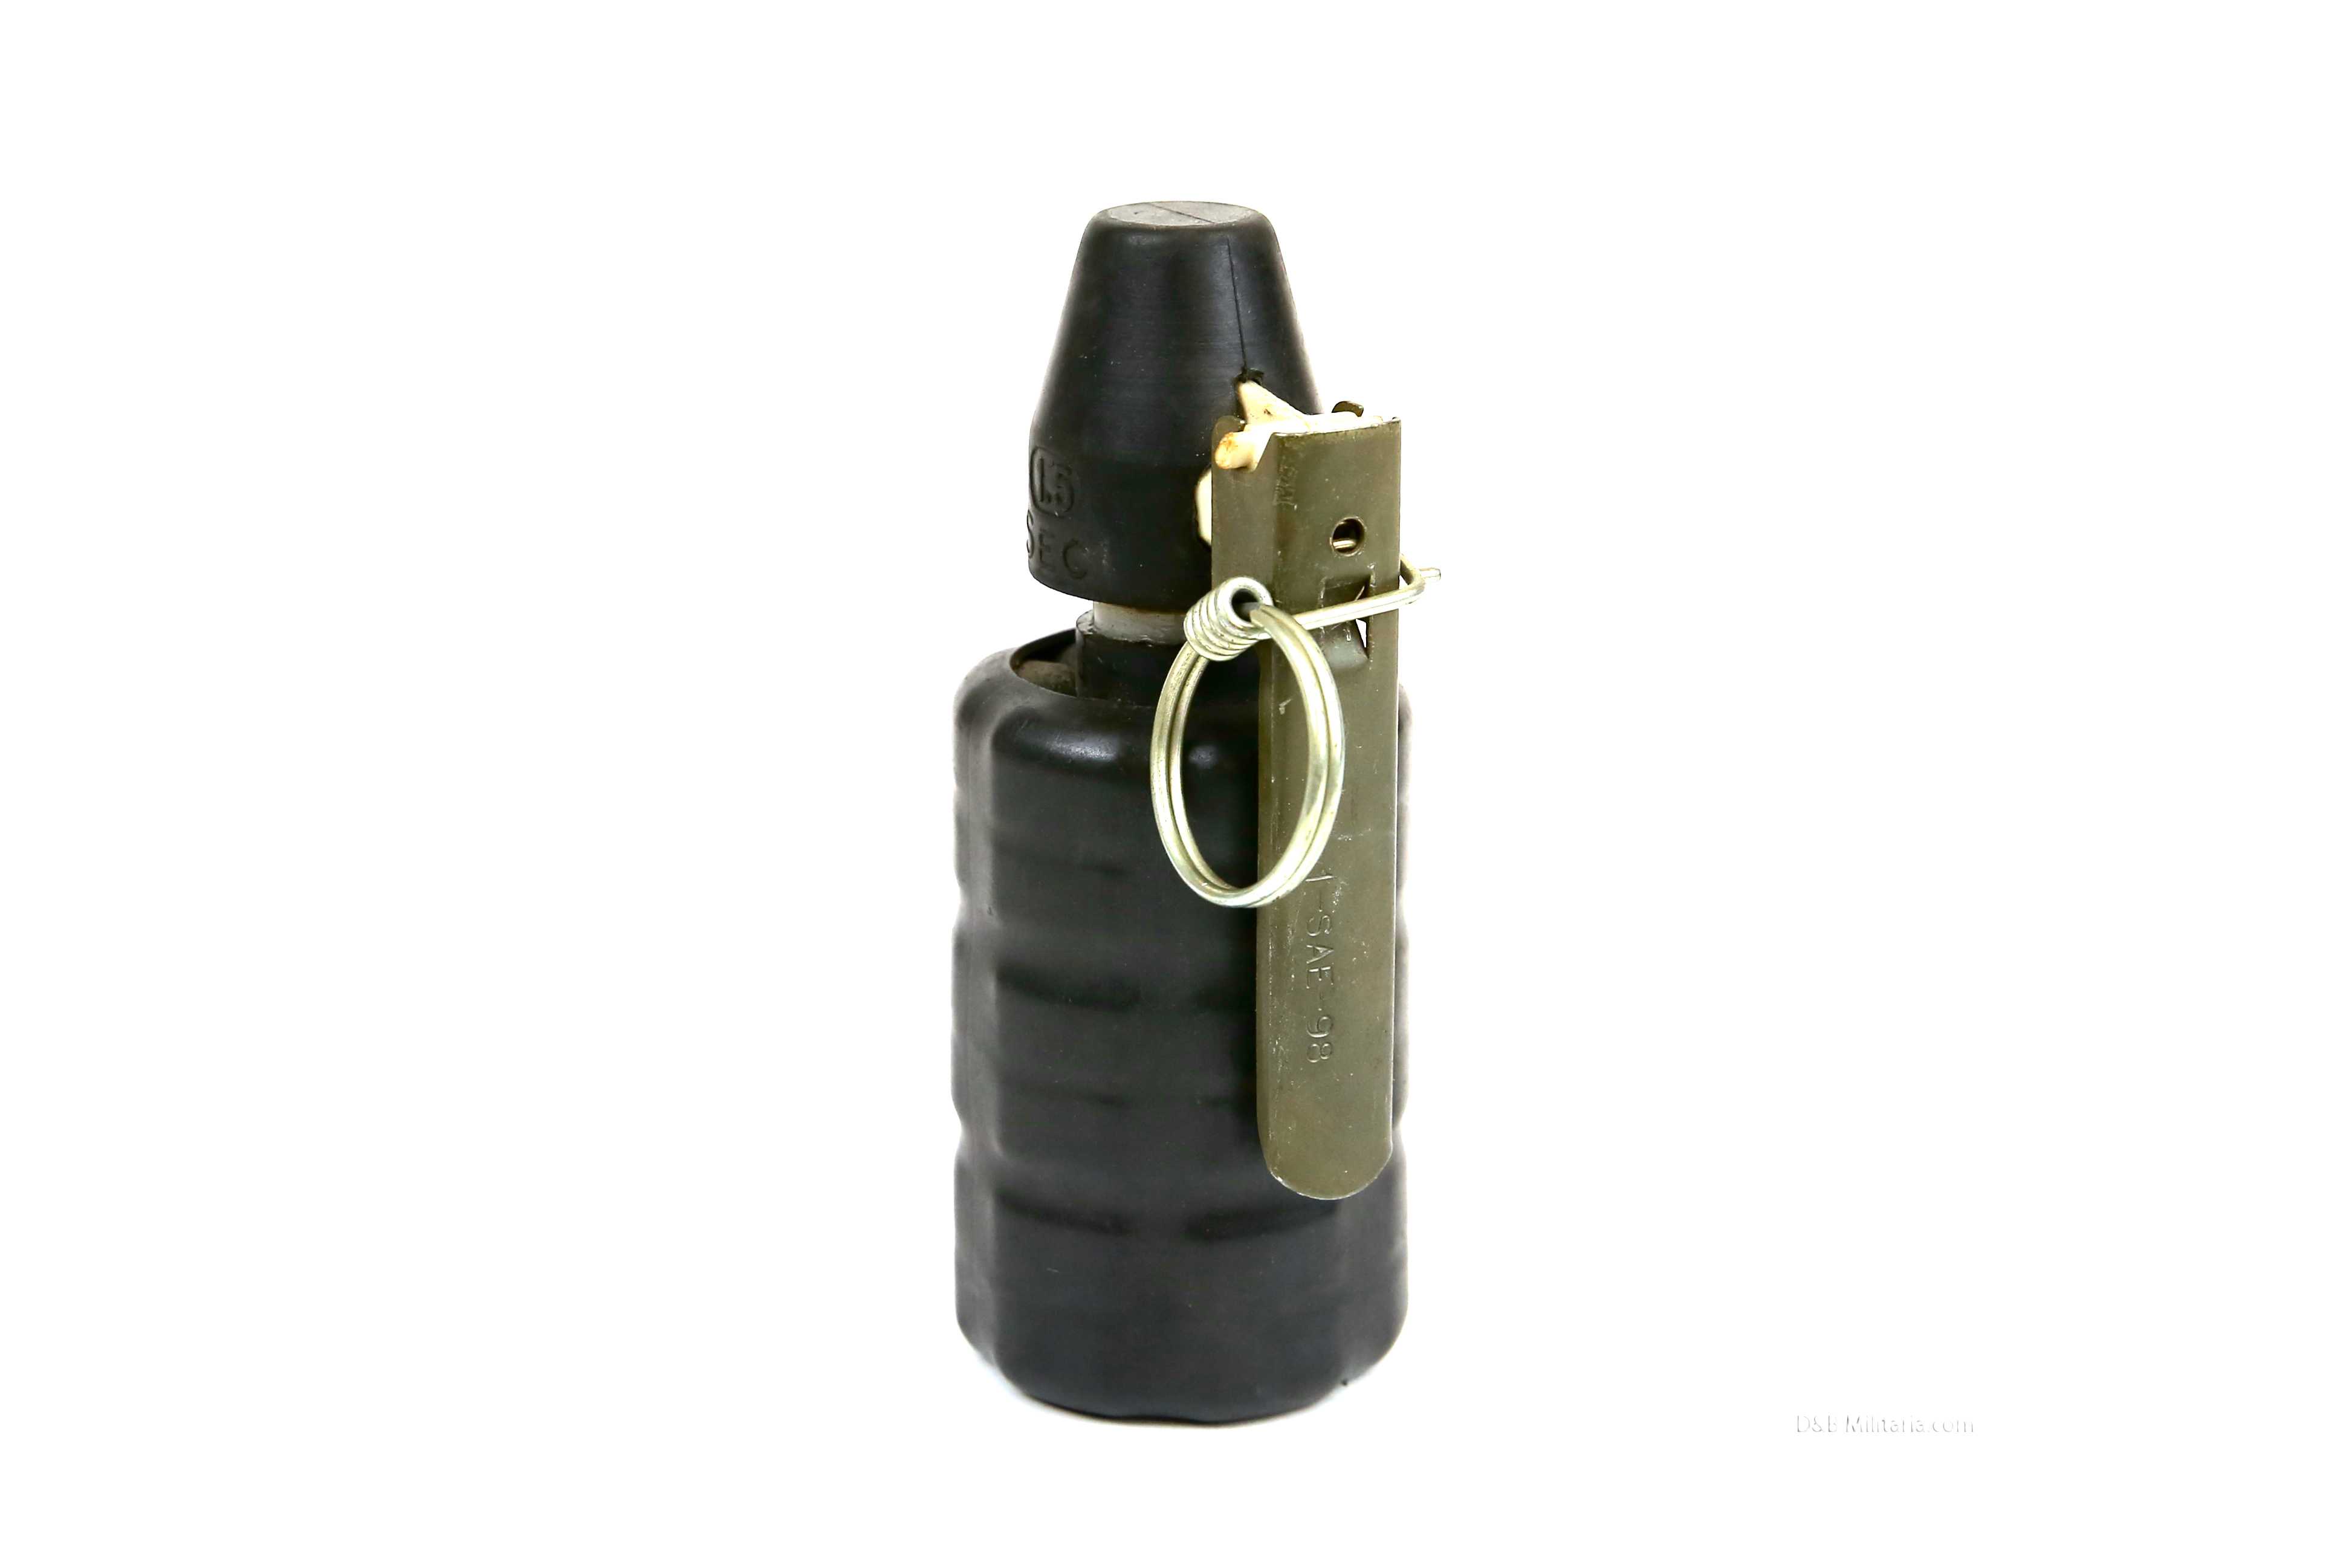 French Anti-Riot DBD grenade